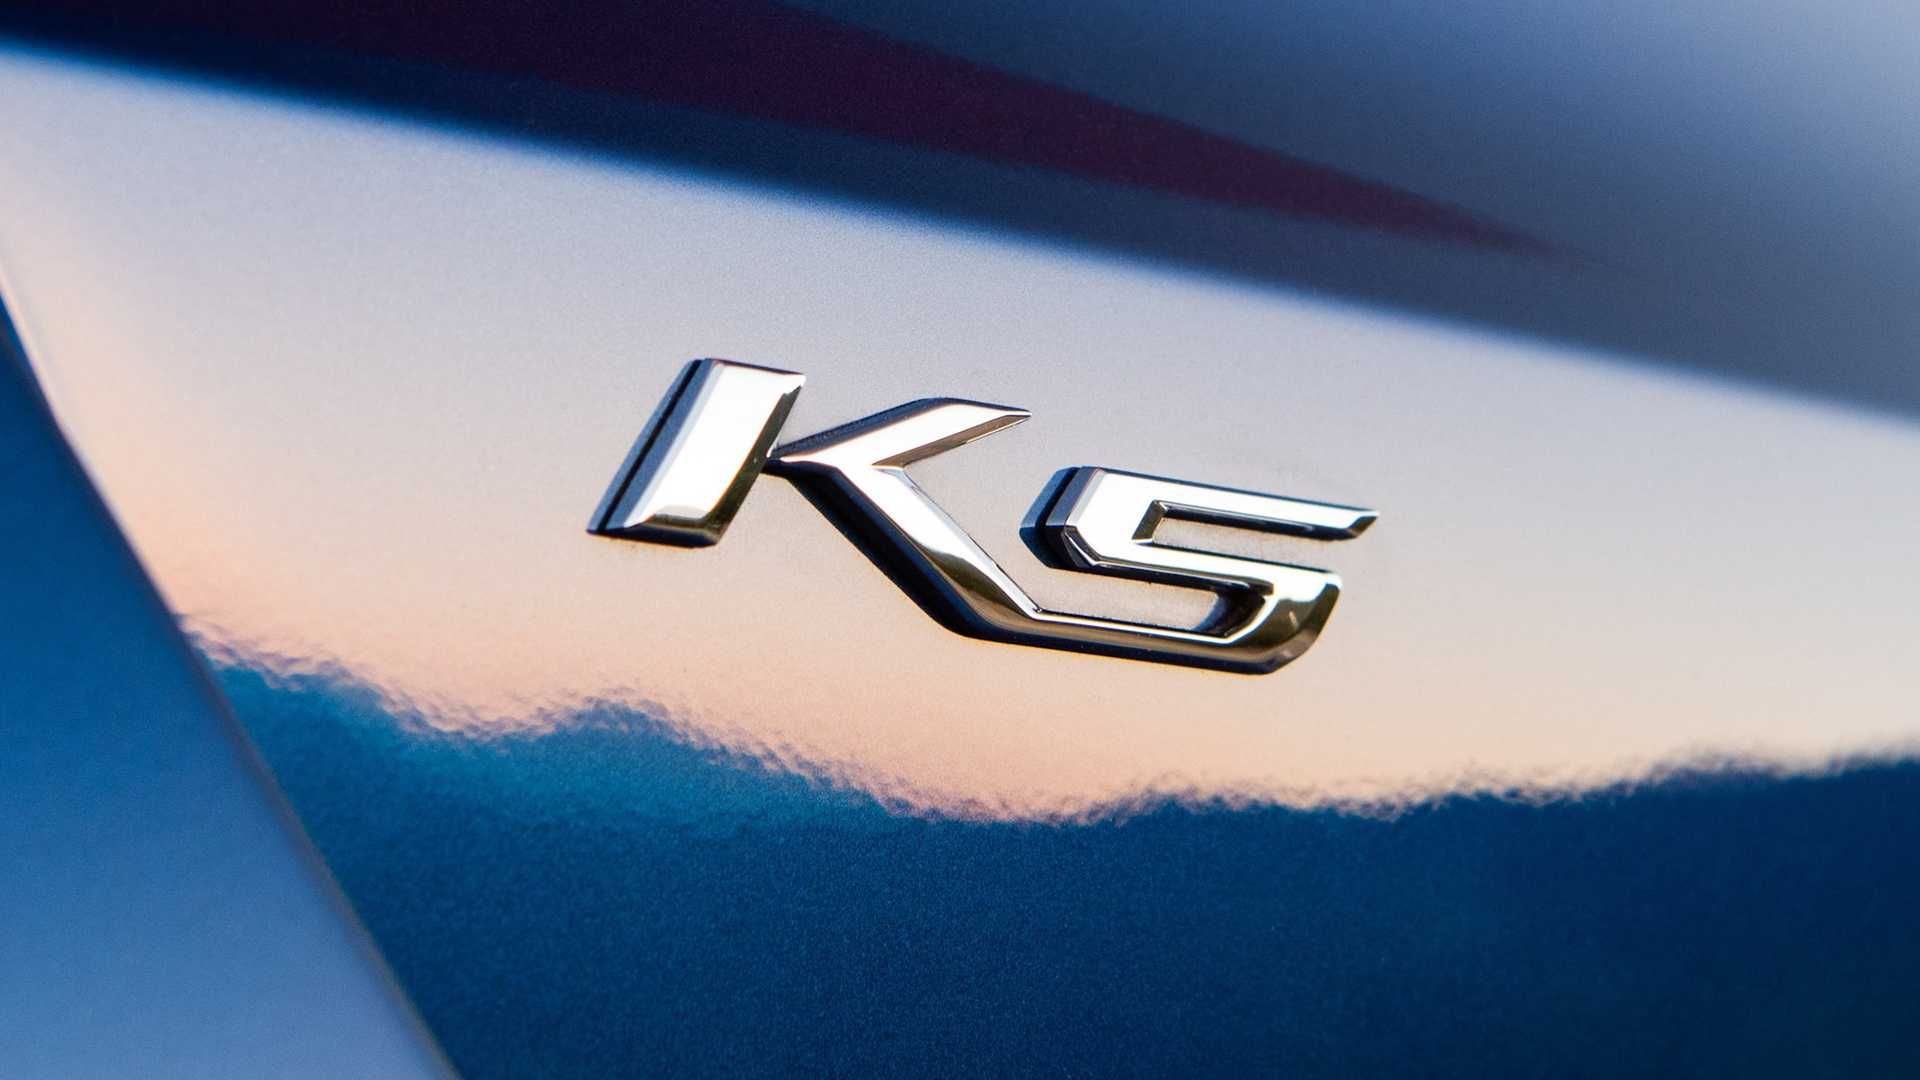 مرجع متخصصين ايران نشان K5 شركت كيا / Kia